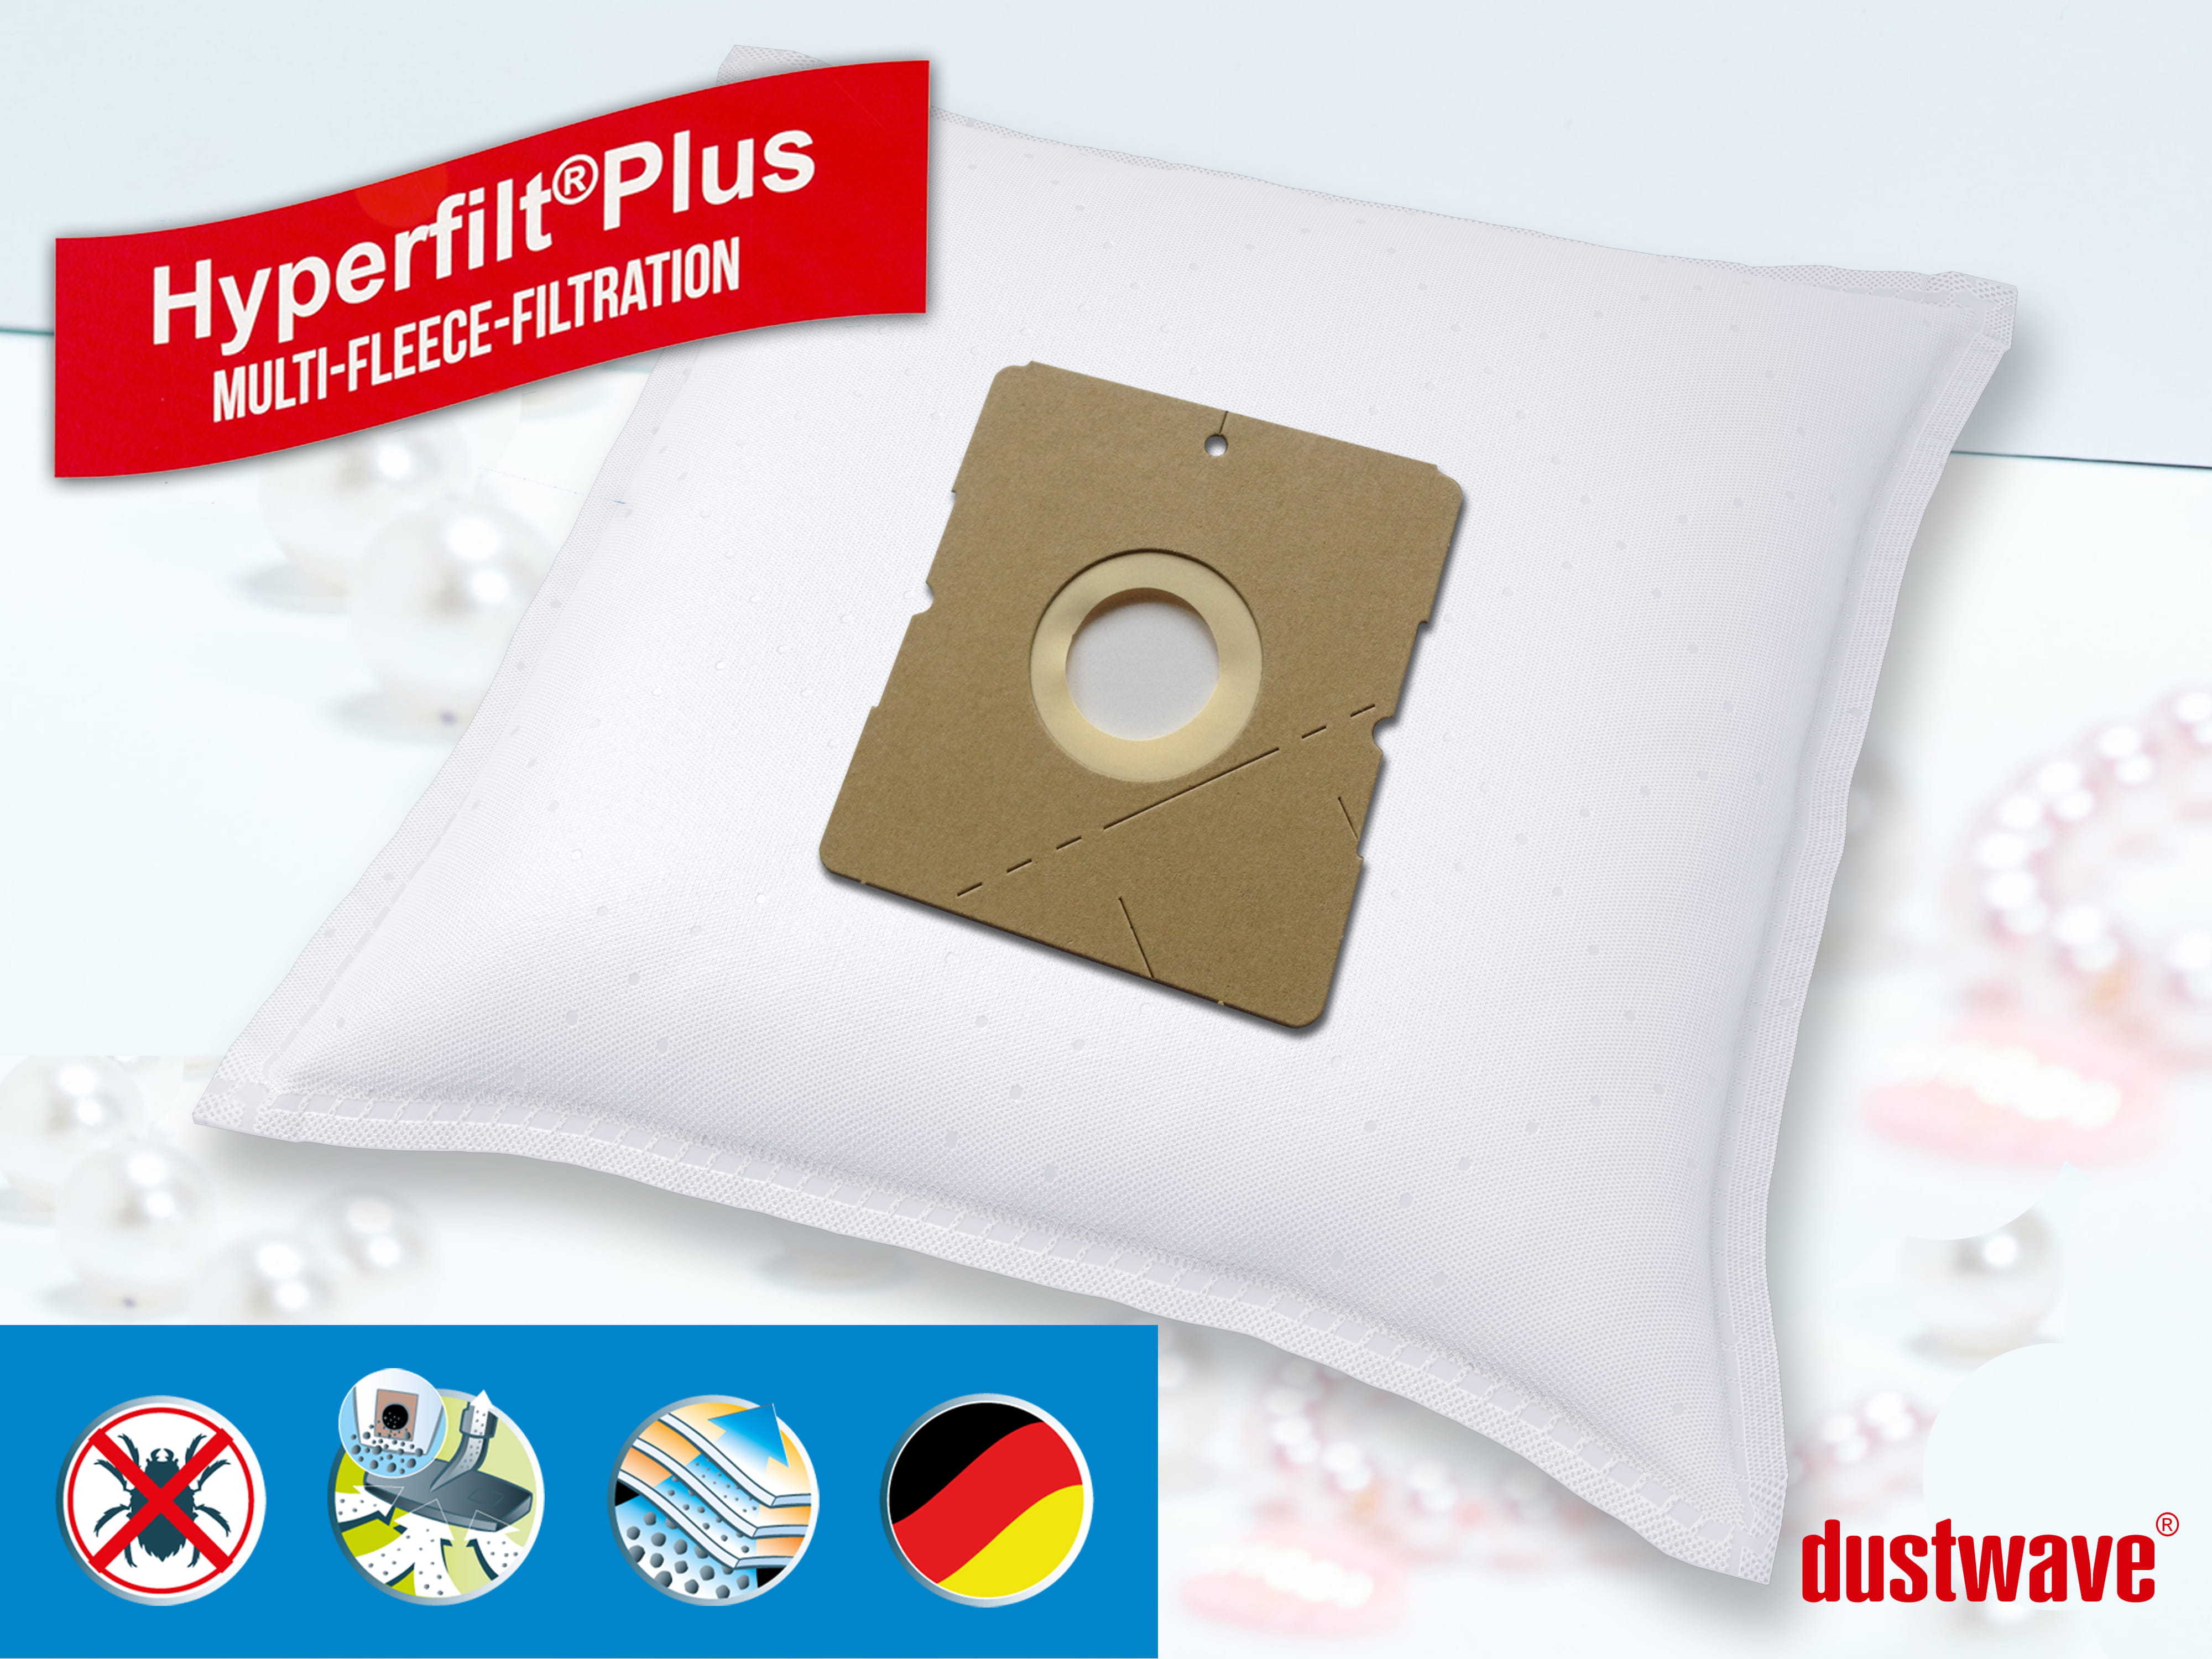 Dustwave® 10 Staubsaugerbeutel für Budget TVC 2400 - hocheffizient, mehrlagiges Mikrovlies mit Hygieneverschluss - Made in Germany